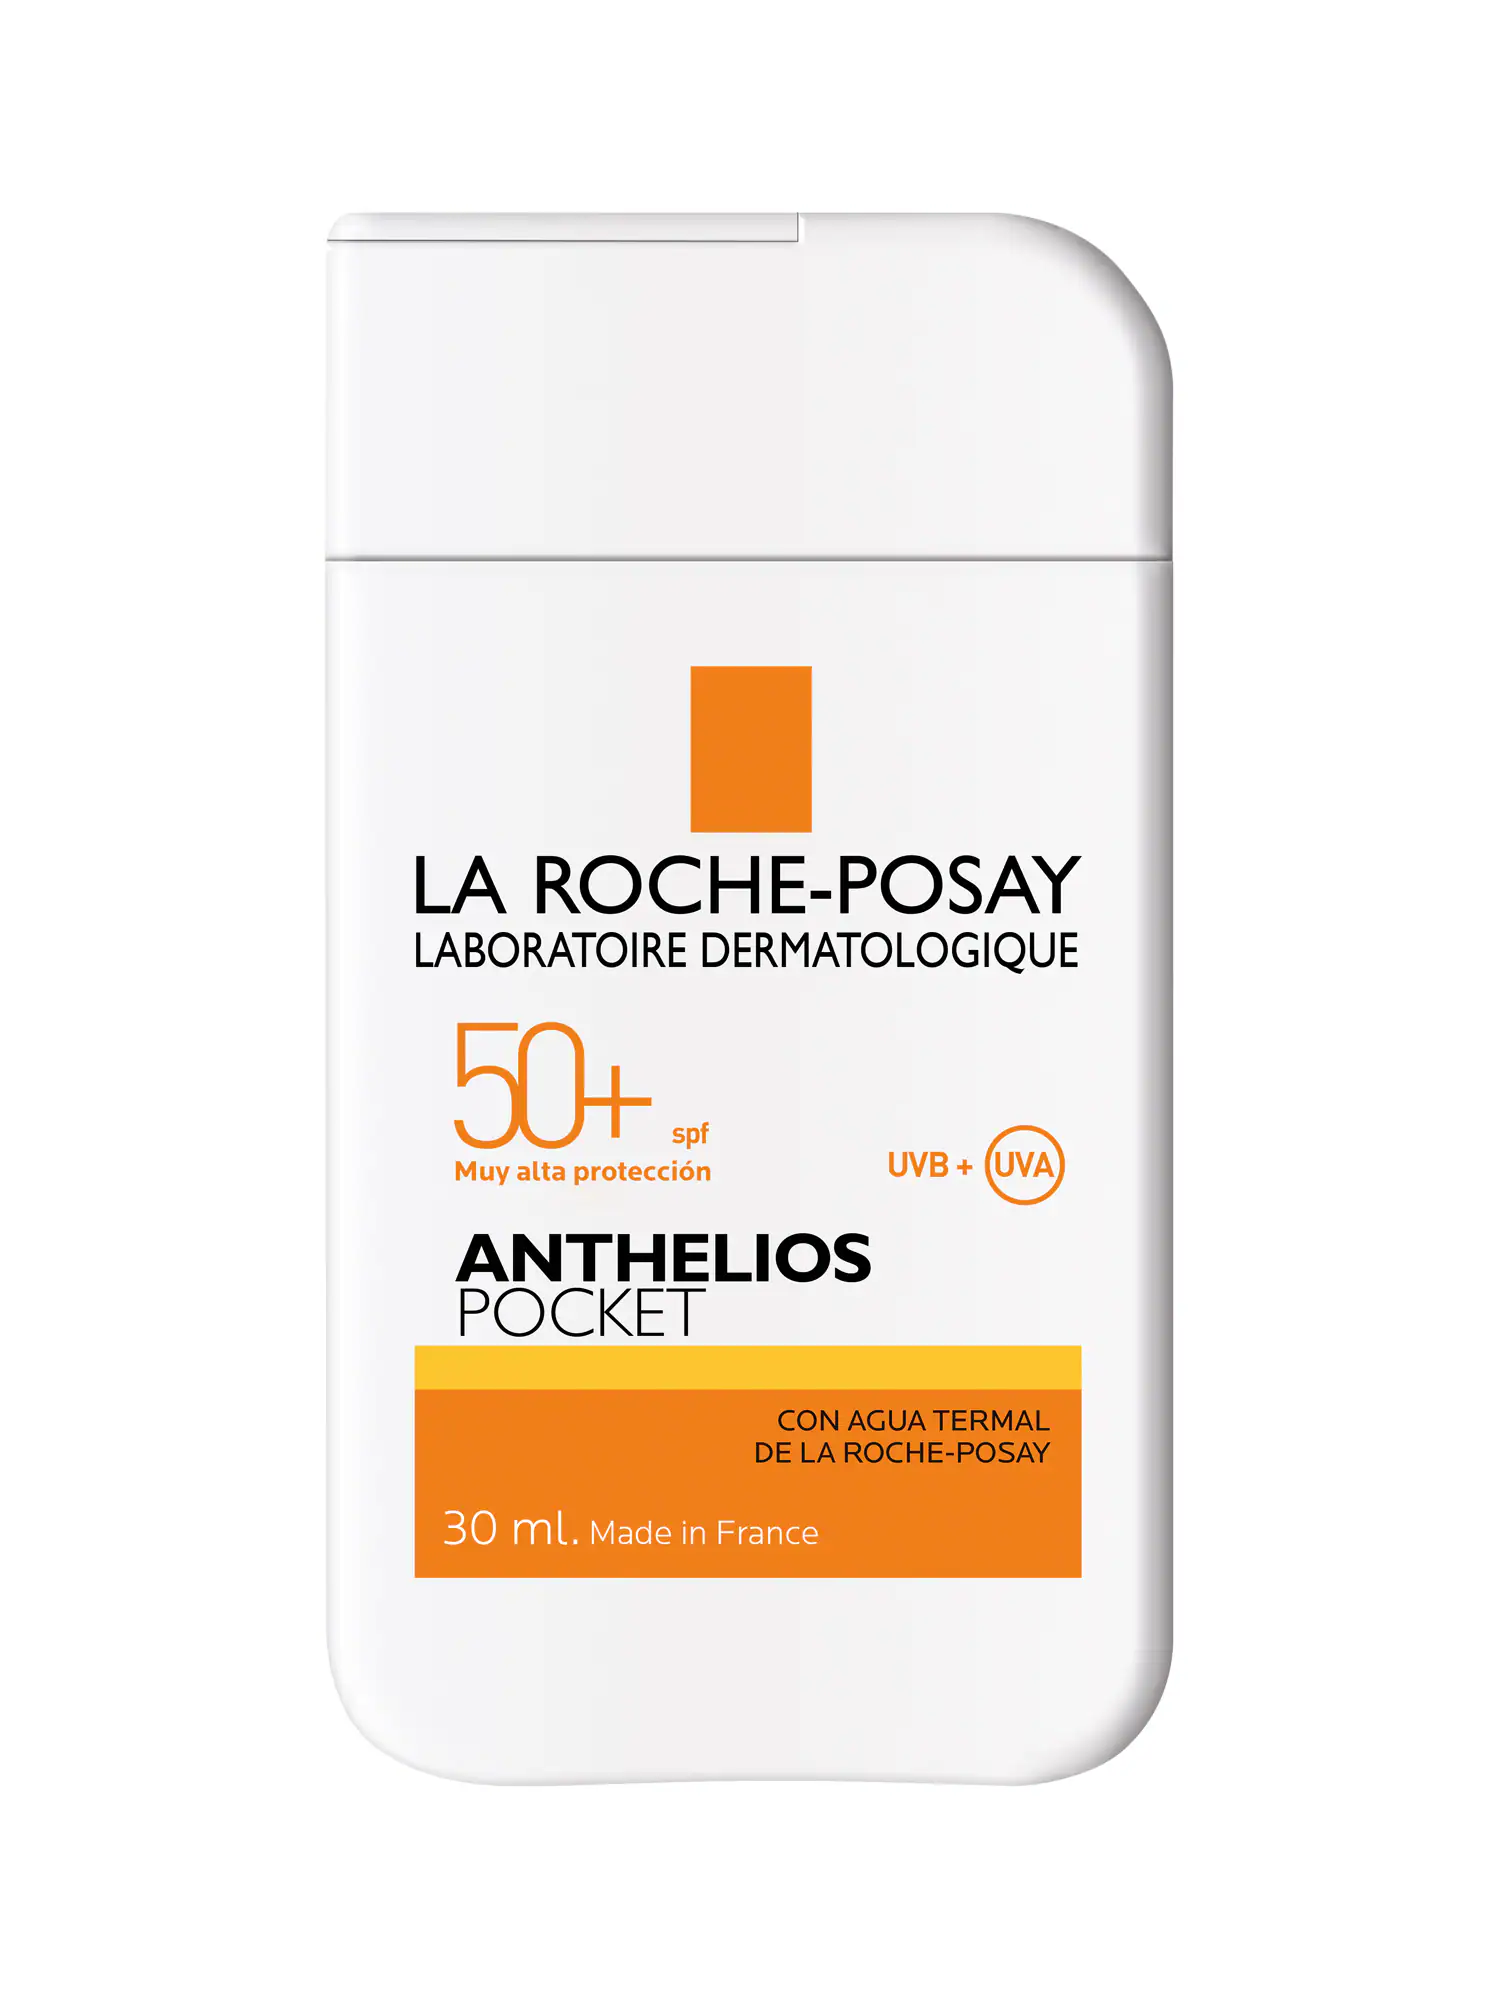 Anthelios Pocket SPF50+ de La Roche-Posay